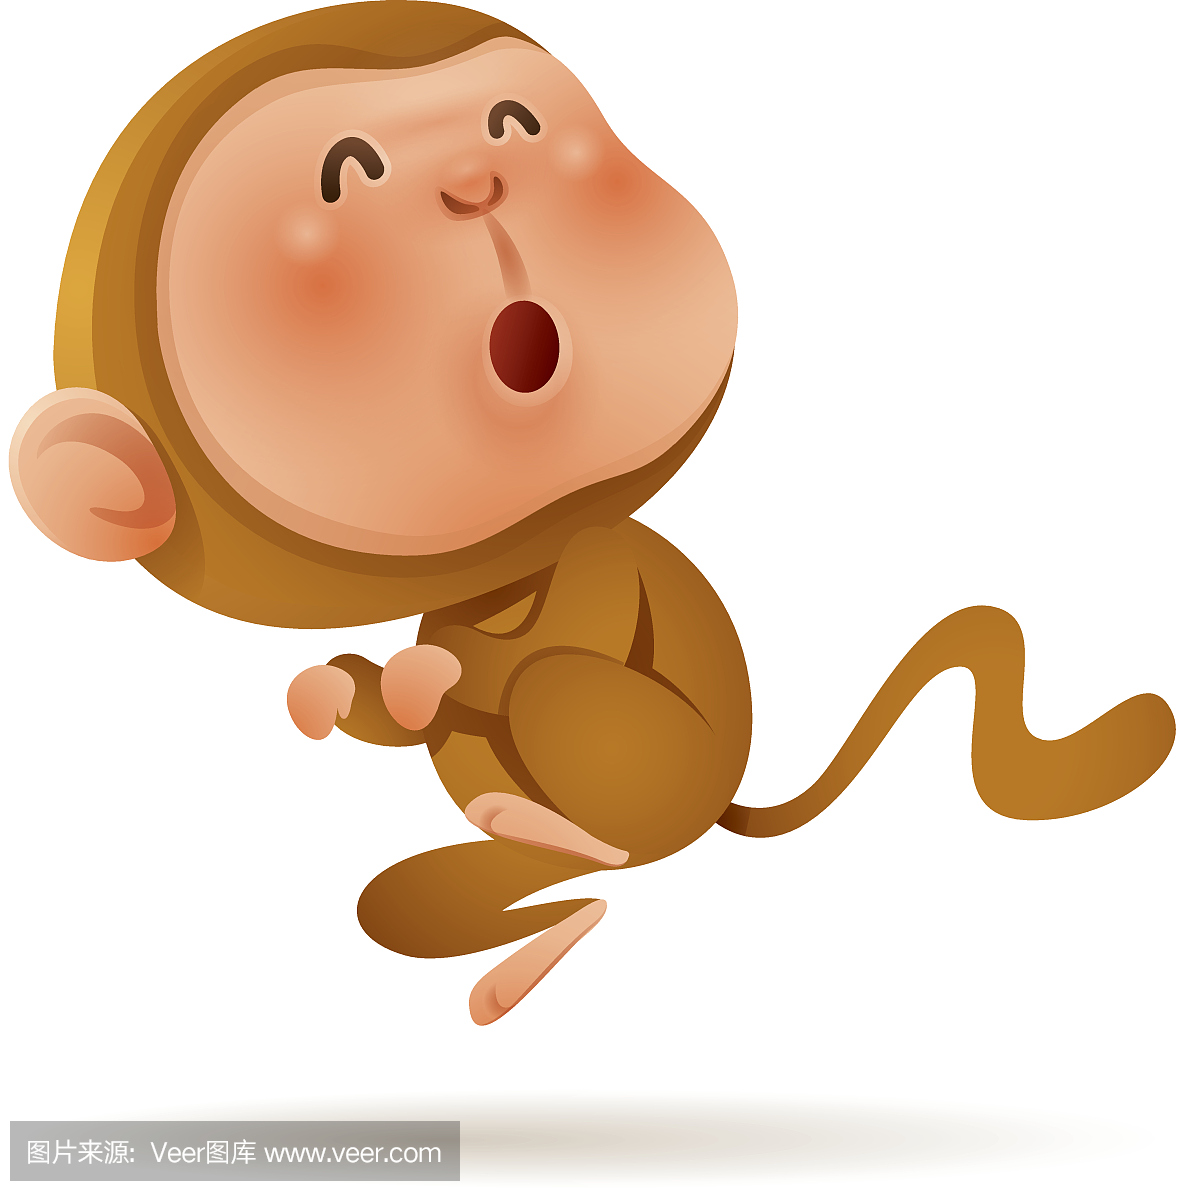 猴子王国 - 腾讯视频